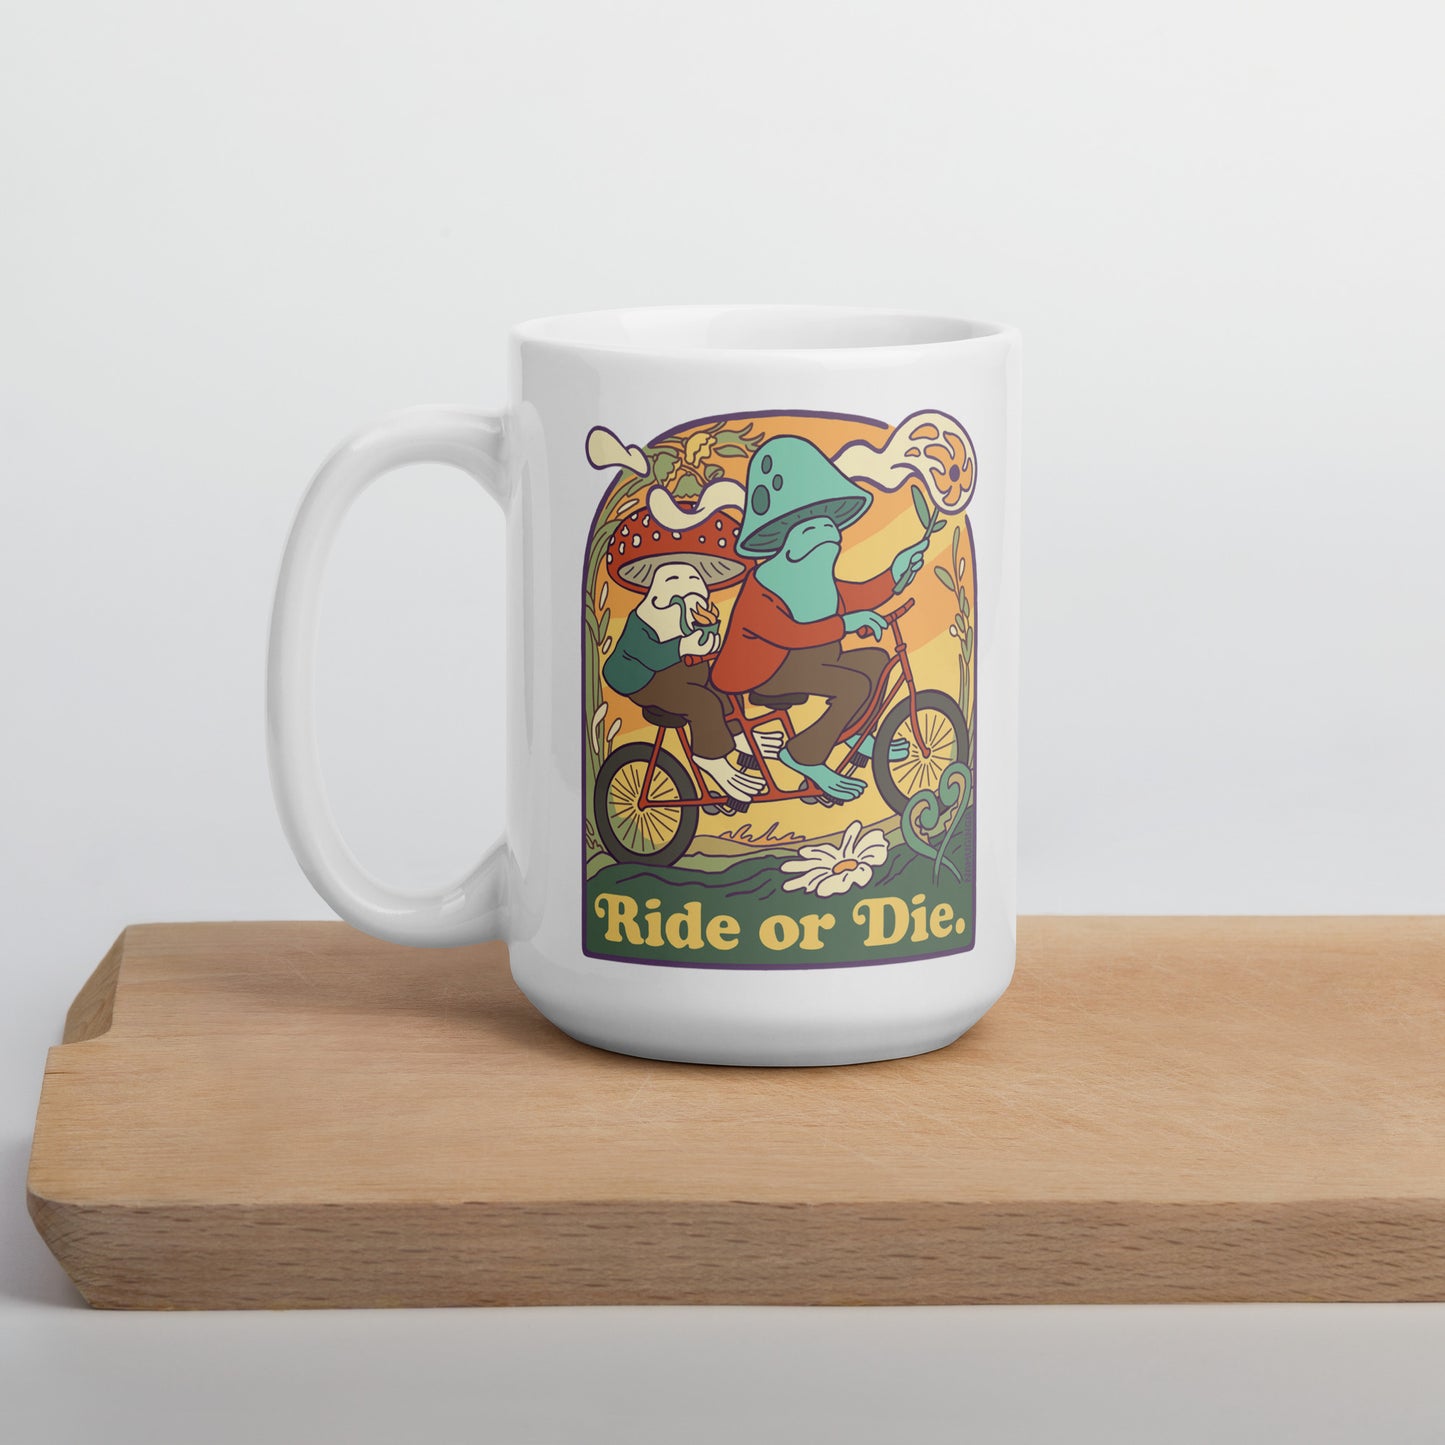 Ride or Die. - 15 oz. White glossy mug